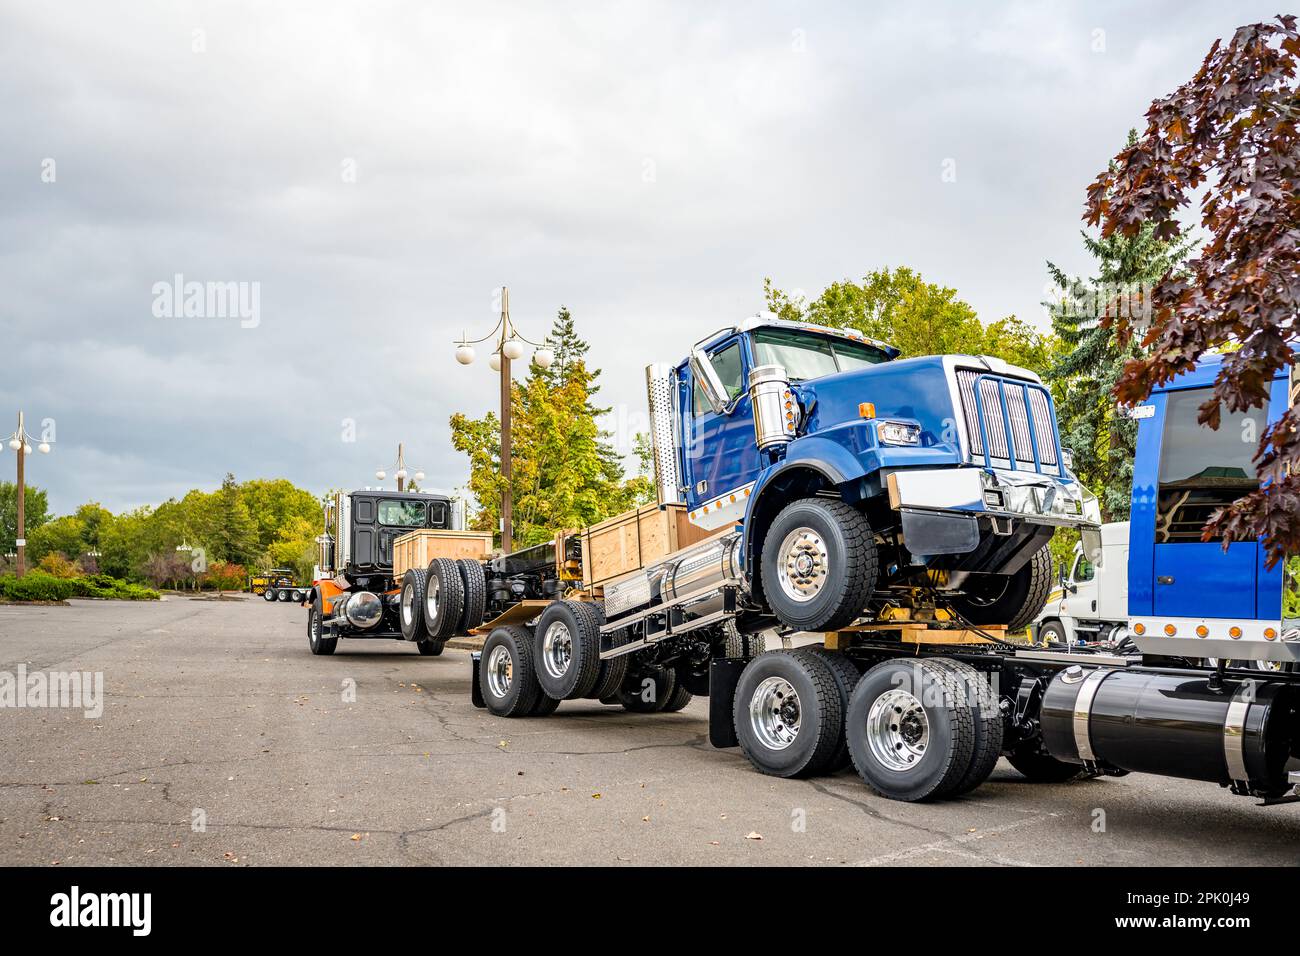 Pulire il carro grande potente cofano Day Cab trasportatore locale trattore semi-camion blu senza semirimorchio che traina un altro semi-camion accoppiati tra loro Foto Stock